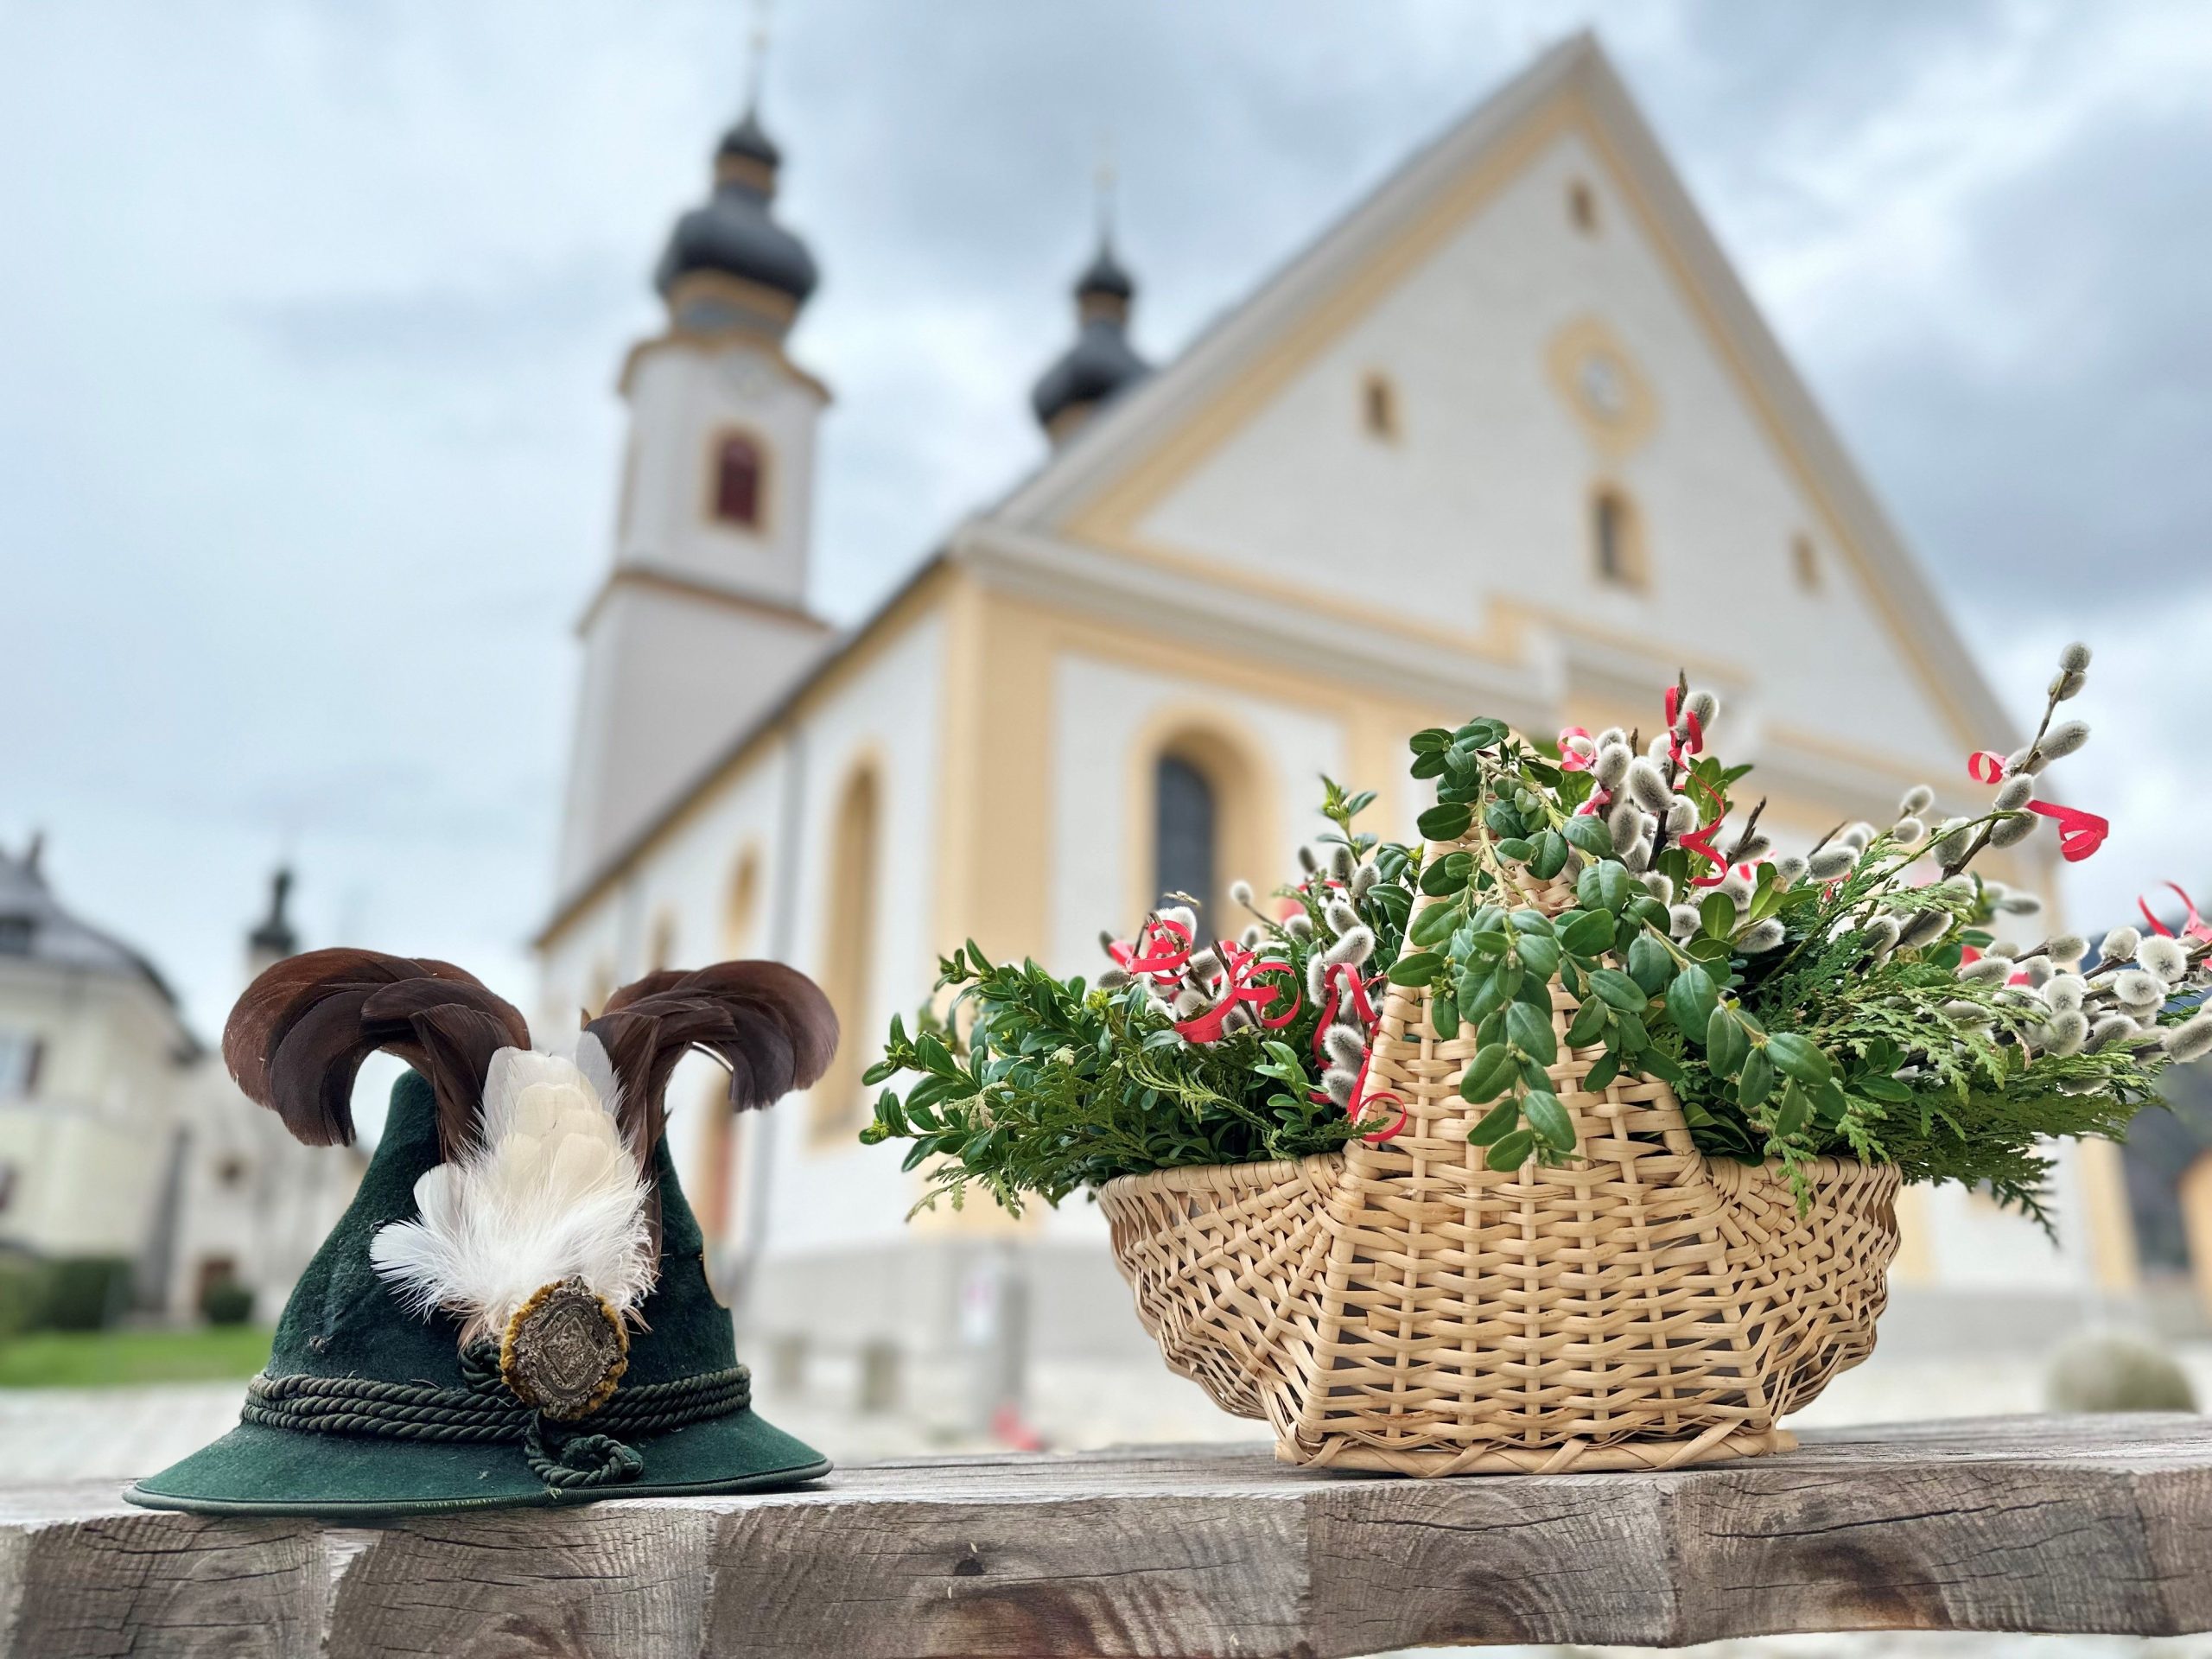 Trachtenhut und Palmbuschen in Korb vor Pfarrkirche in Aschau im Chiemgau